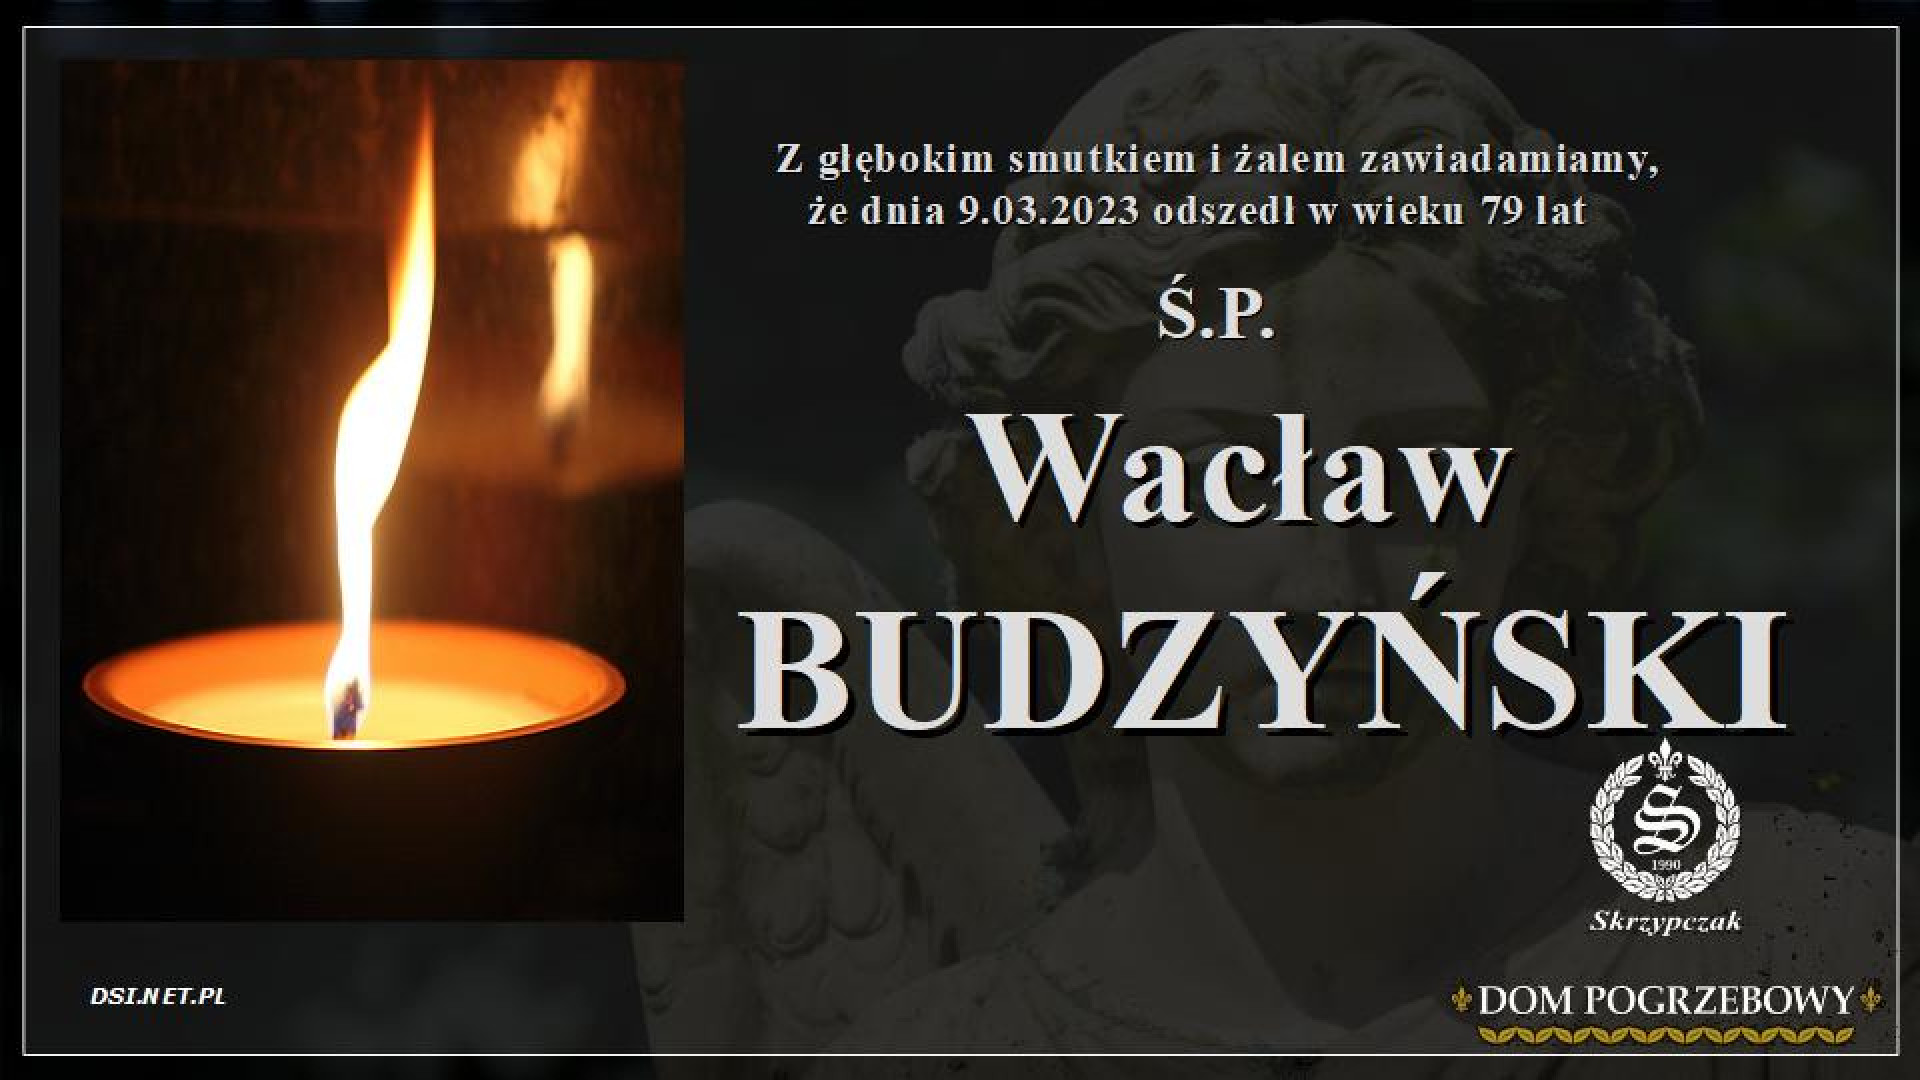 Ś.P. Wacław Budzyński